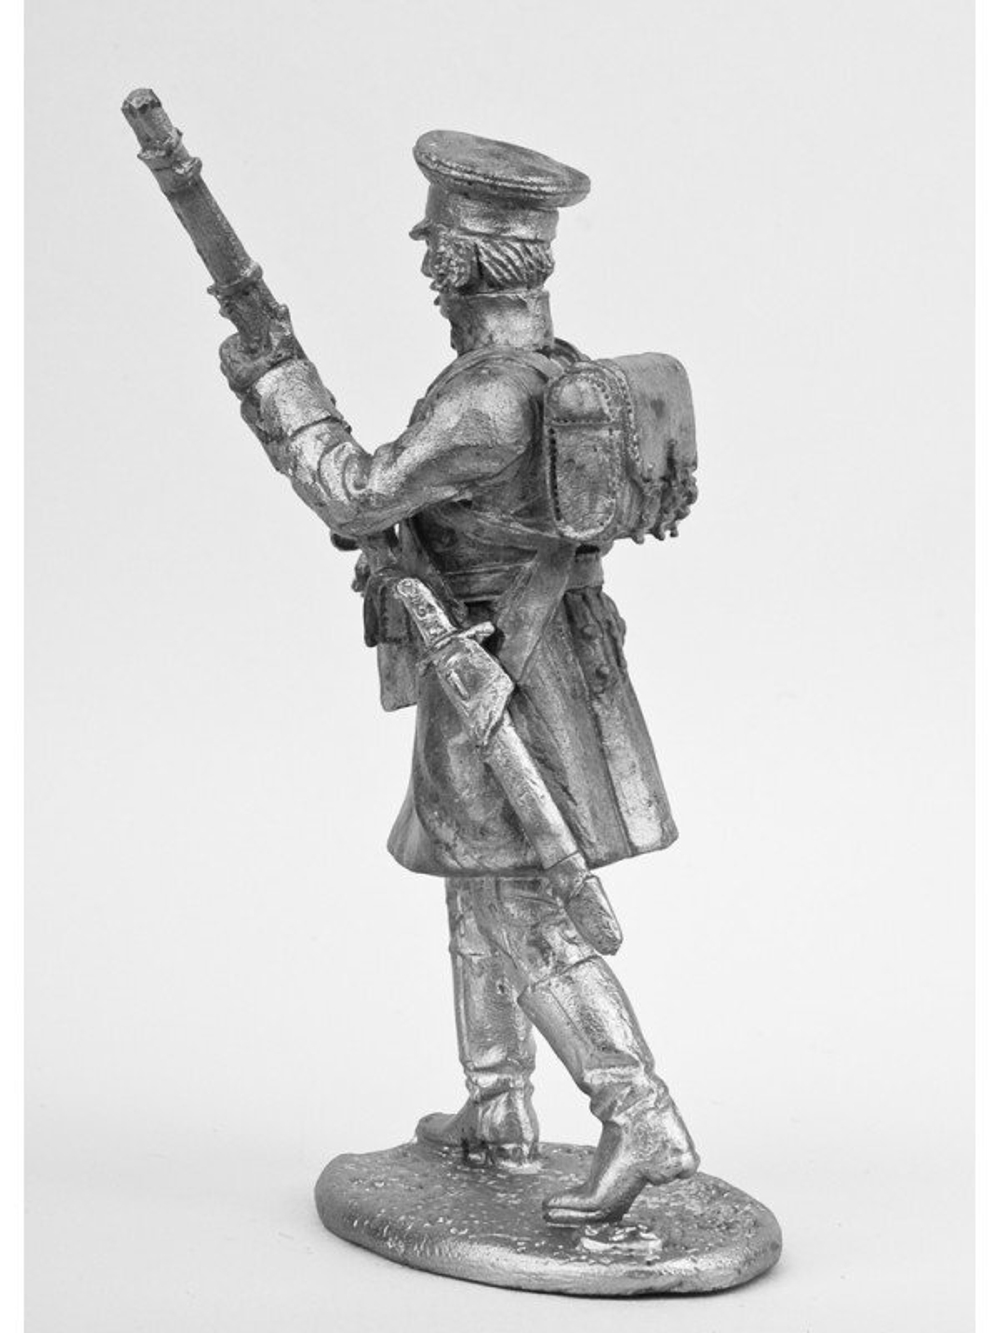 Оловянный солдатик Лифляндский стрелок, 1812 г.